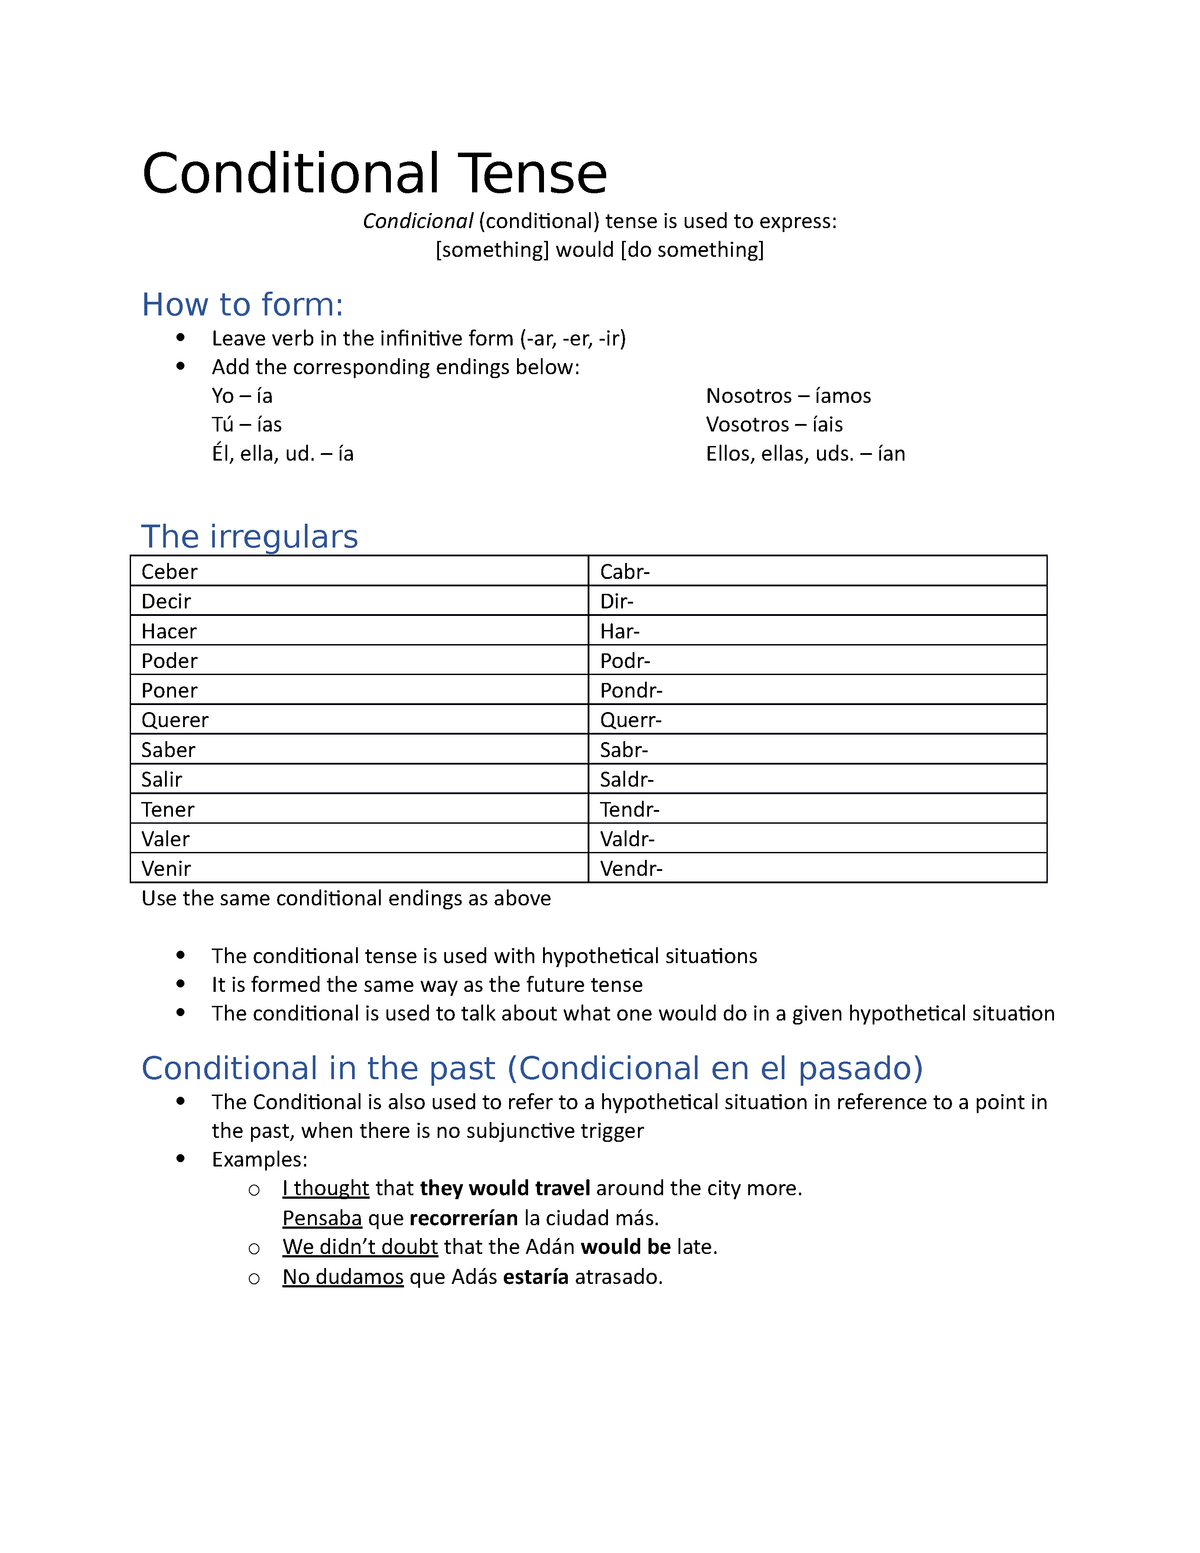 spa-202-conditional-tense-conditional-tense-condicional